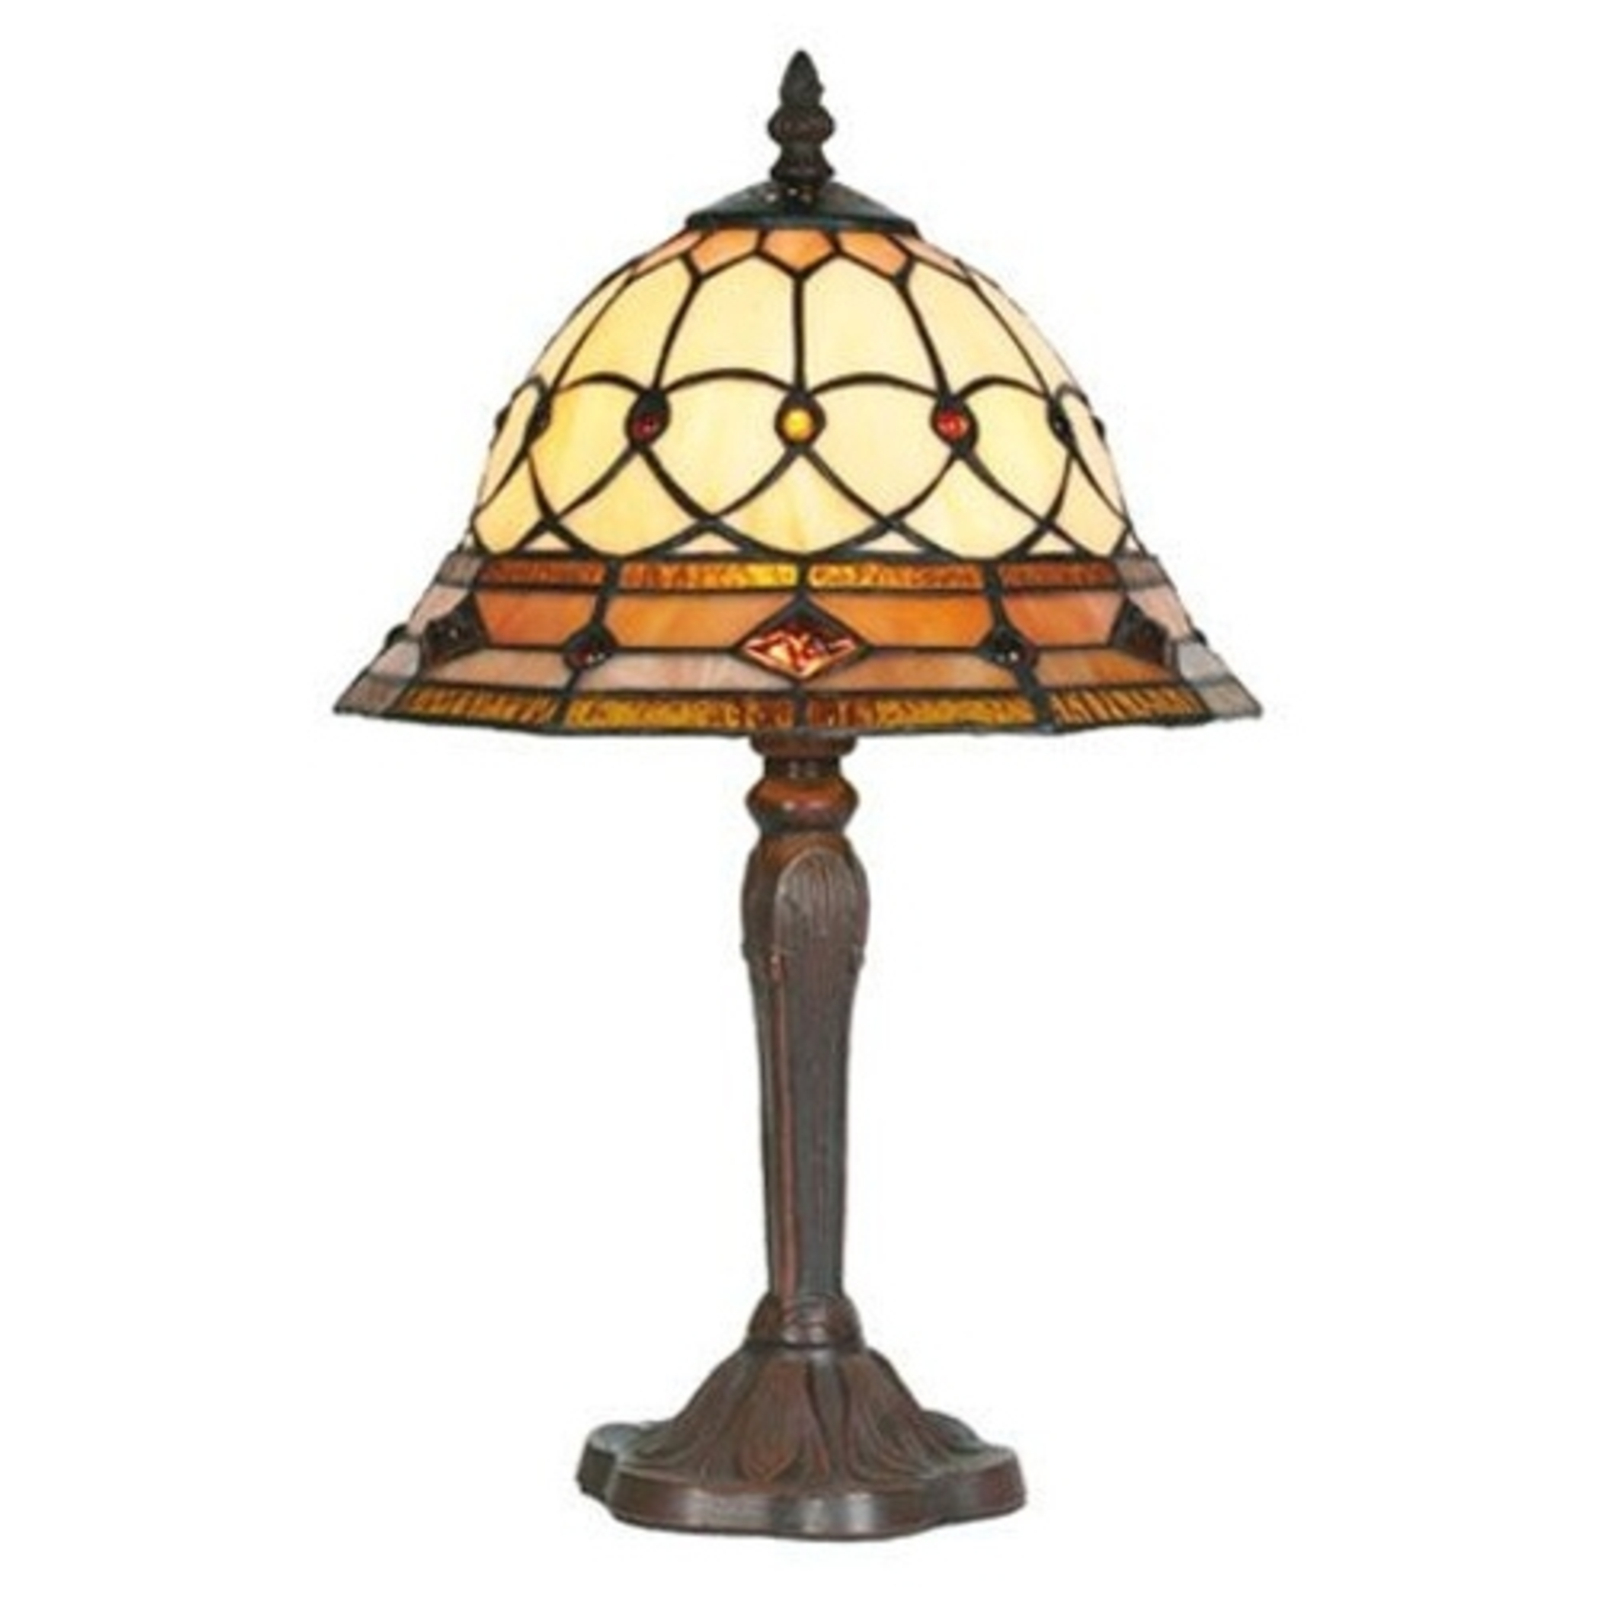 ANTHEA stolní lampa v Tiffany stylu